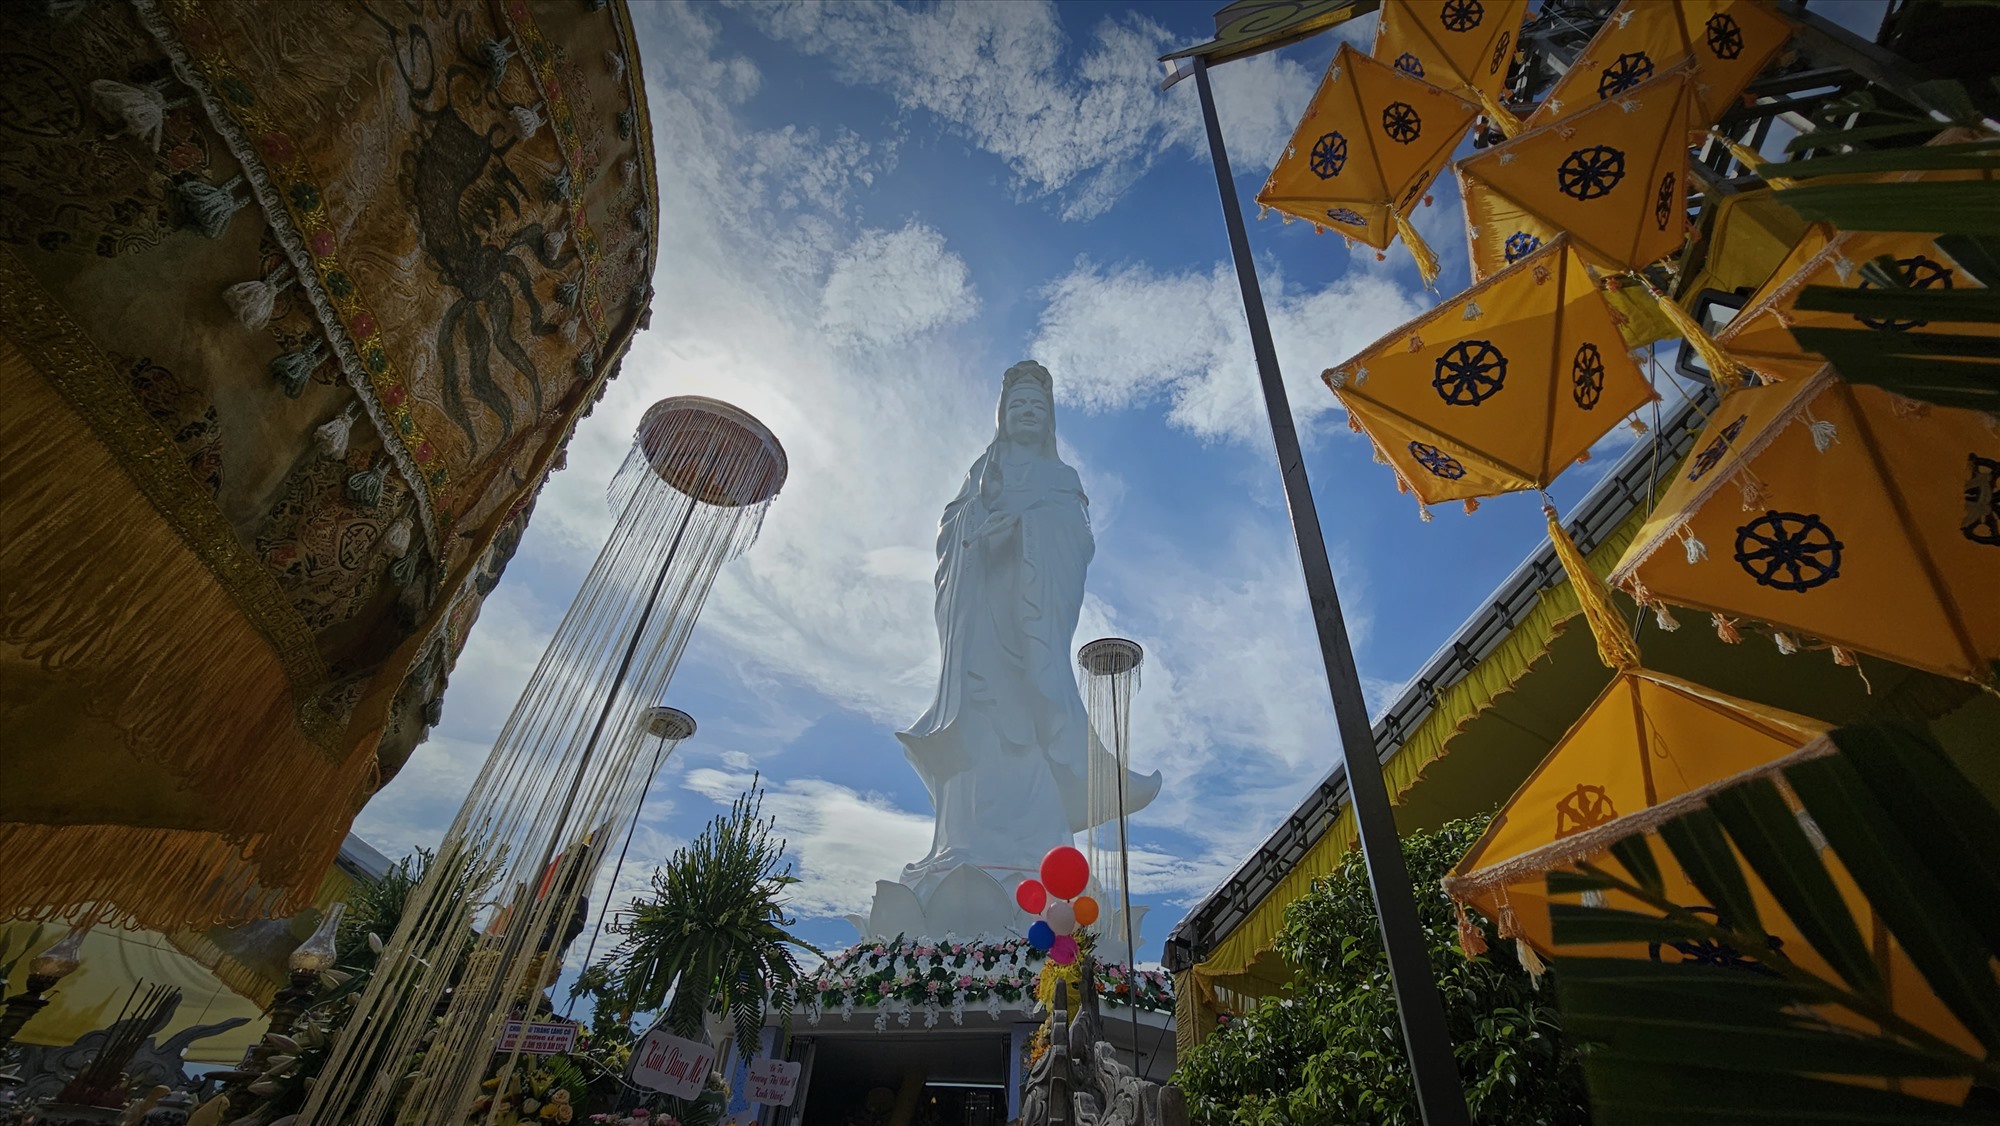 tại Trung tâm Du lịch Tâm linh Phật giáo Quán Thế Âm (núi Tứ Tượng, xã Thủy Bằng, TP Huế), Ban Trị sự Giáo hội Phật giáo Việt Nam (GHPGVN) tỉnh Thừa Thiên Huế đã long trọng tổ chức Lễ Chính thức Lễ hội Quán Thế Âm năm Quý Mão PL.2567-DL.2023. 